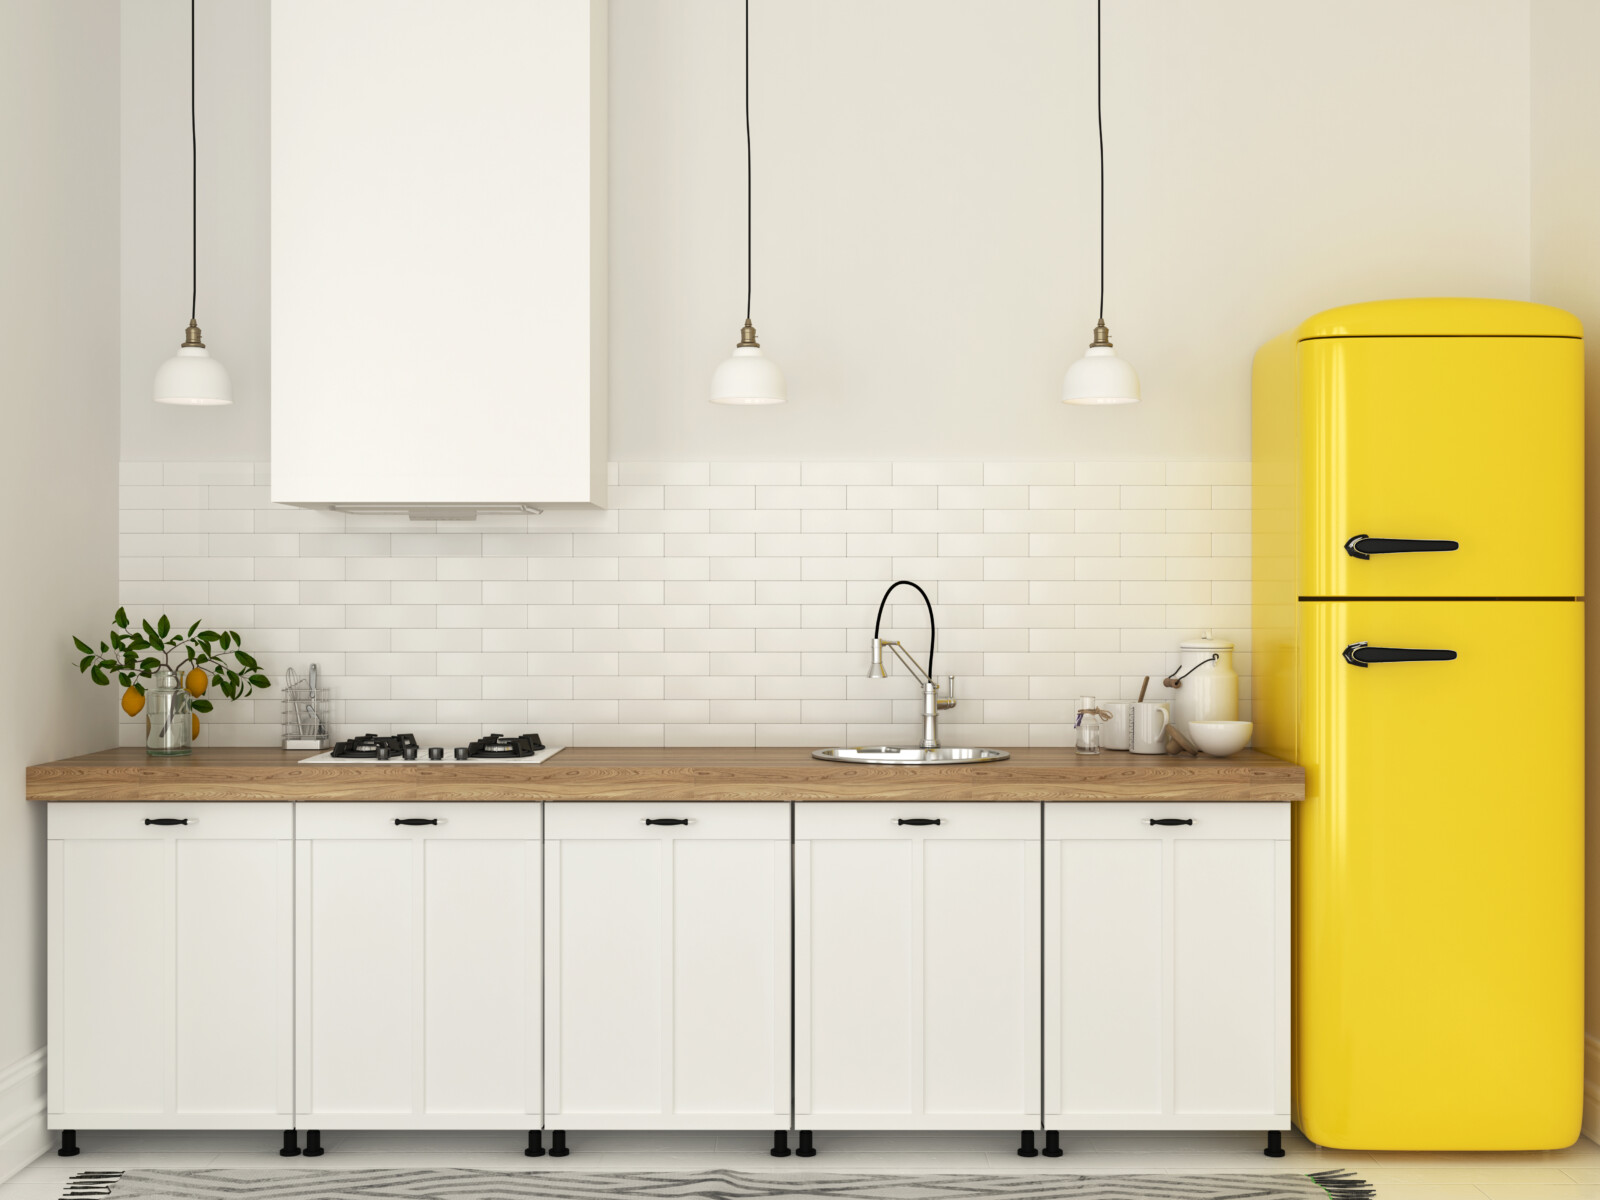 7 ярких и оригинальных идей для декорирования холодильника